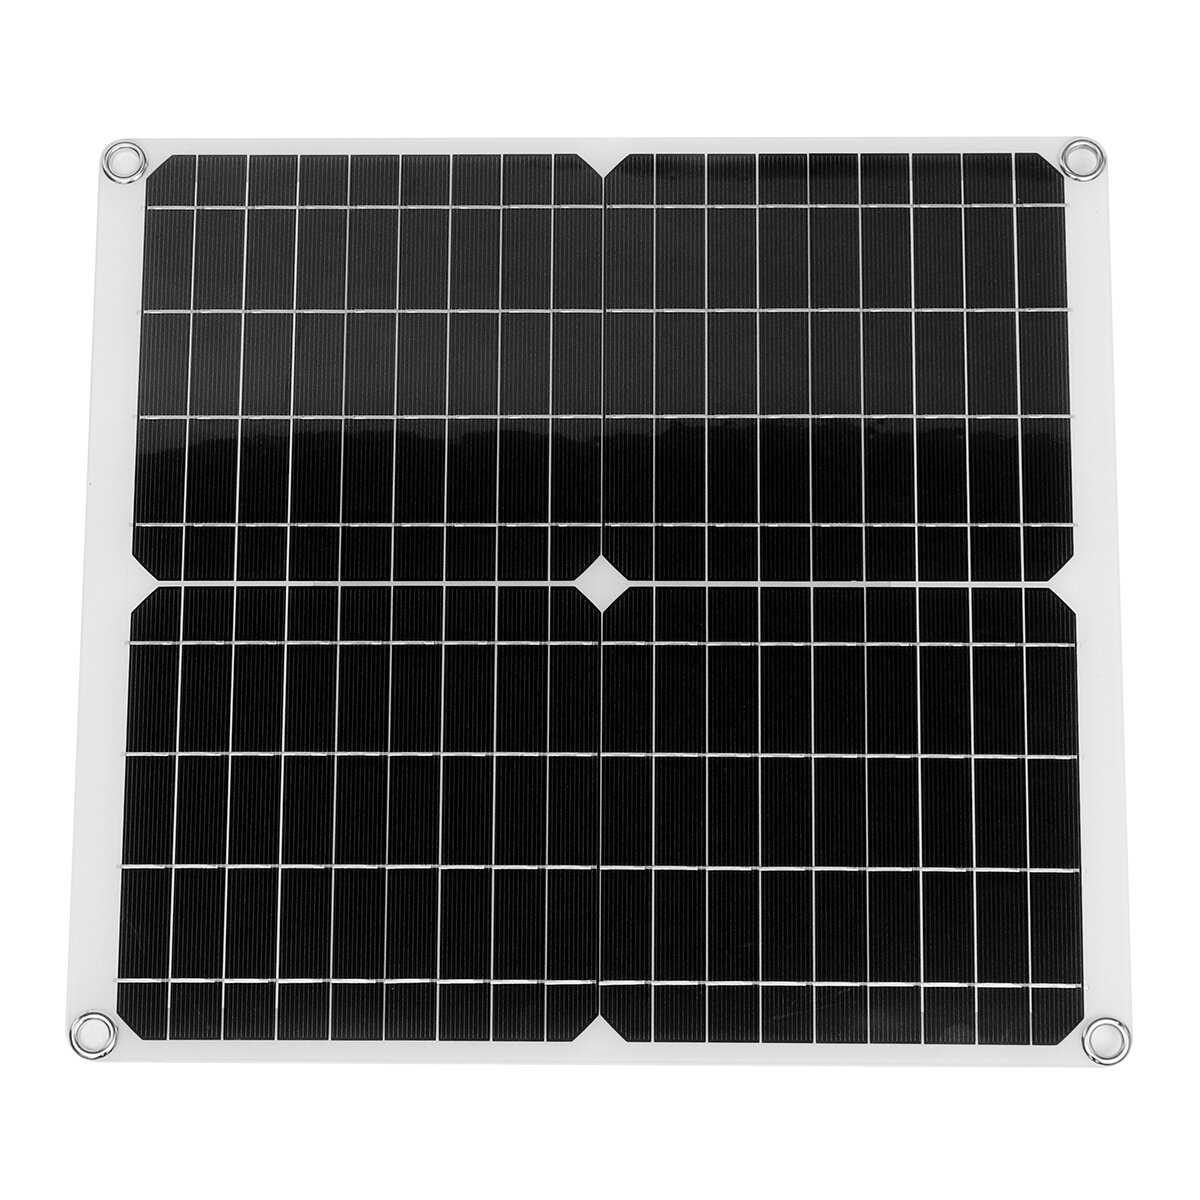 22W 36x33cm Solar Panel with 2pcs Buckle & 4pcs Suction Cup